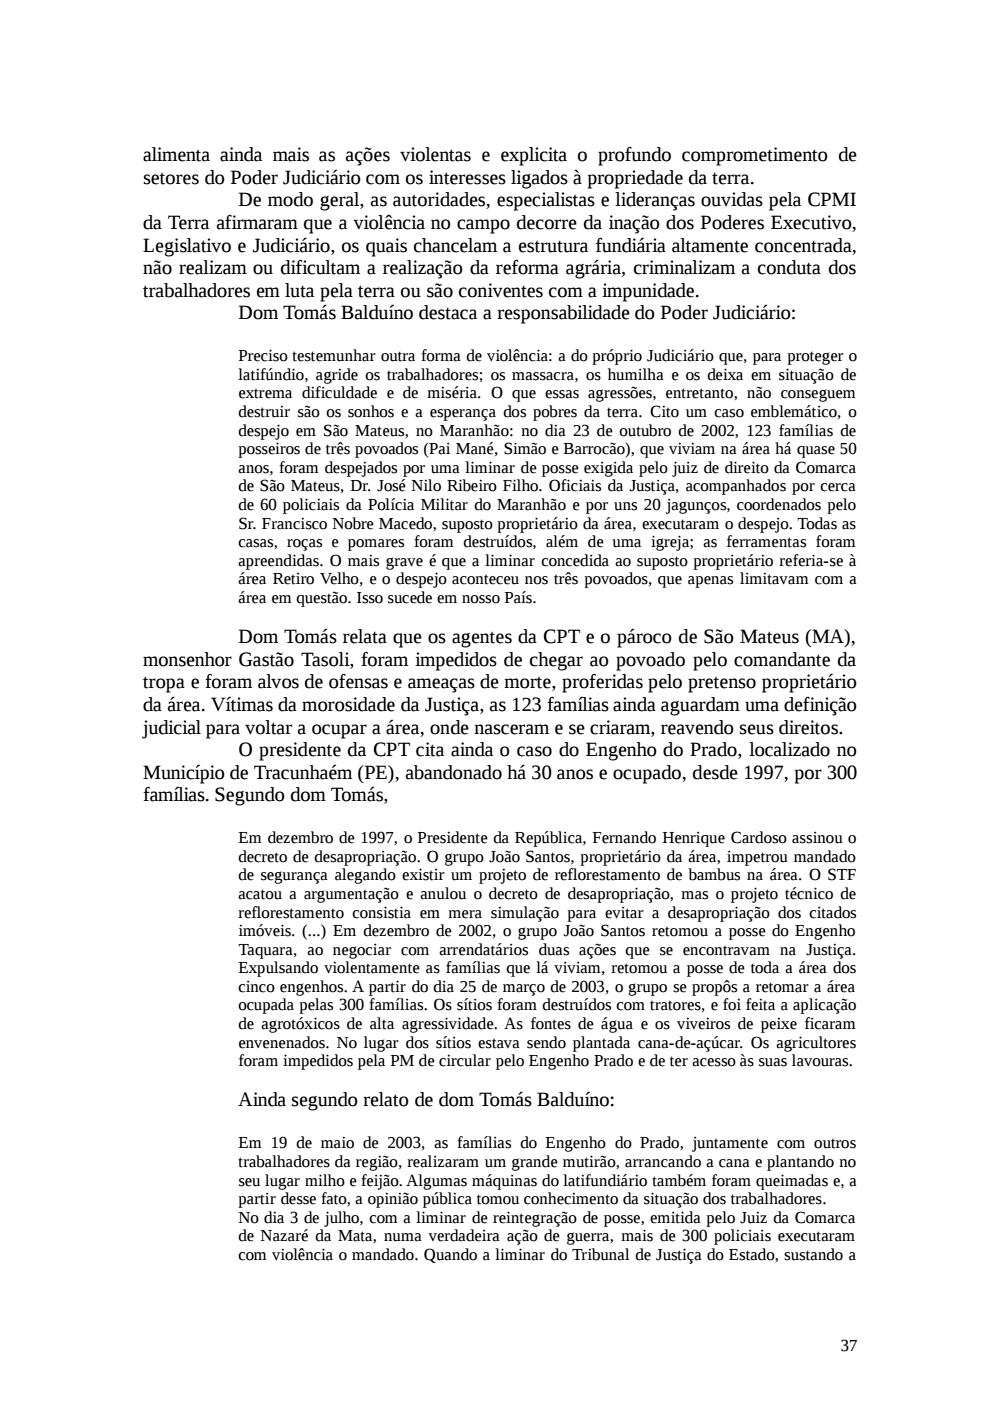 Page 37 from Relatório final da comissão